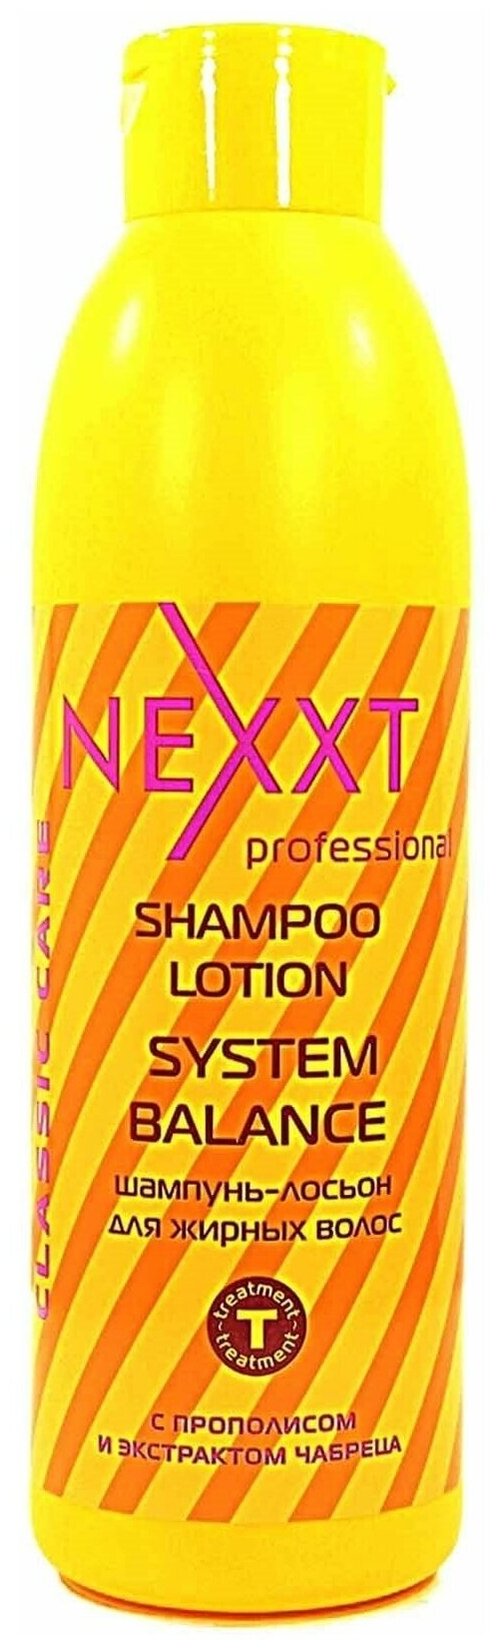 NEXPROF шампунь-лосьон Professional Classic Care System Balance для жирных волос, 1000 мл